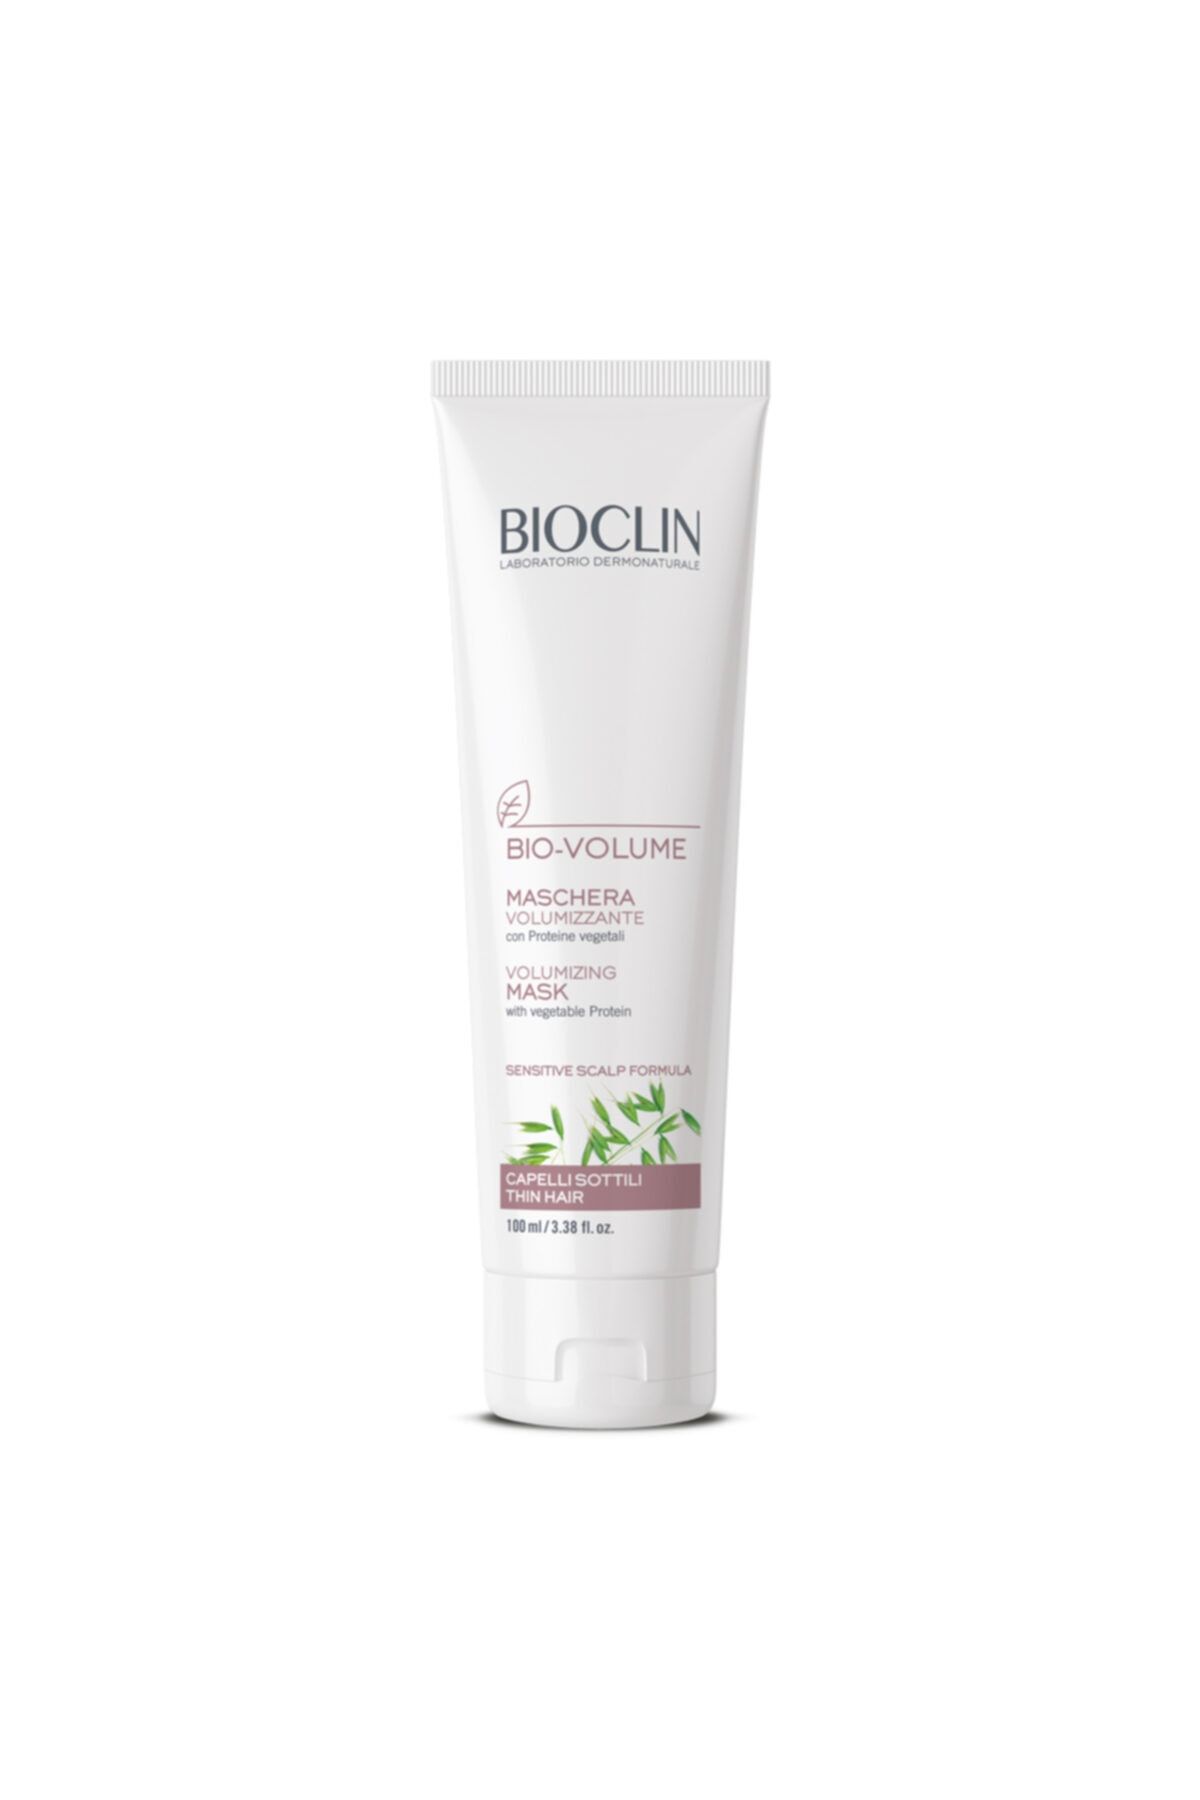 Bioclin Saç Maskesi-bıoclın Bıo-volume Volumızıng Mask